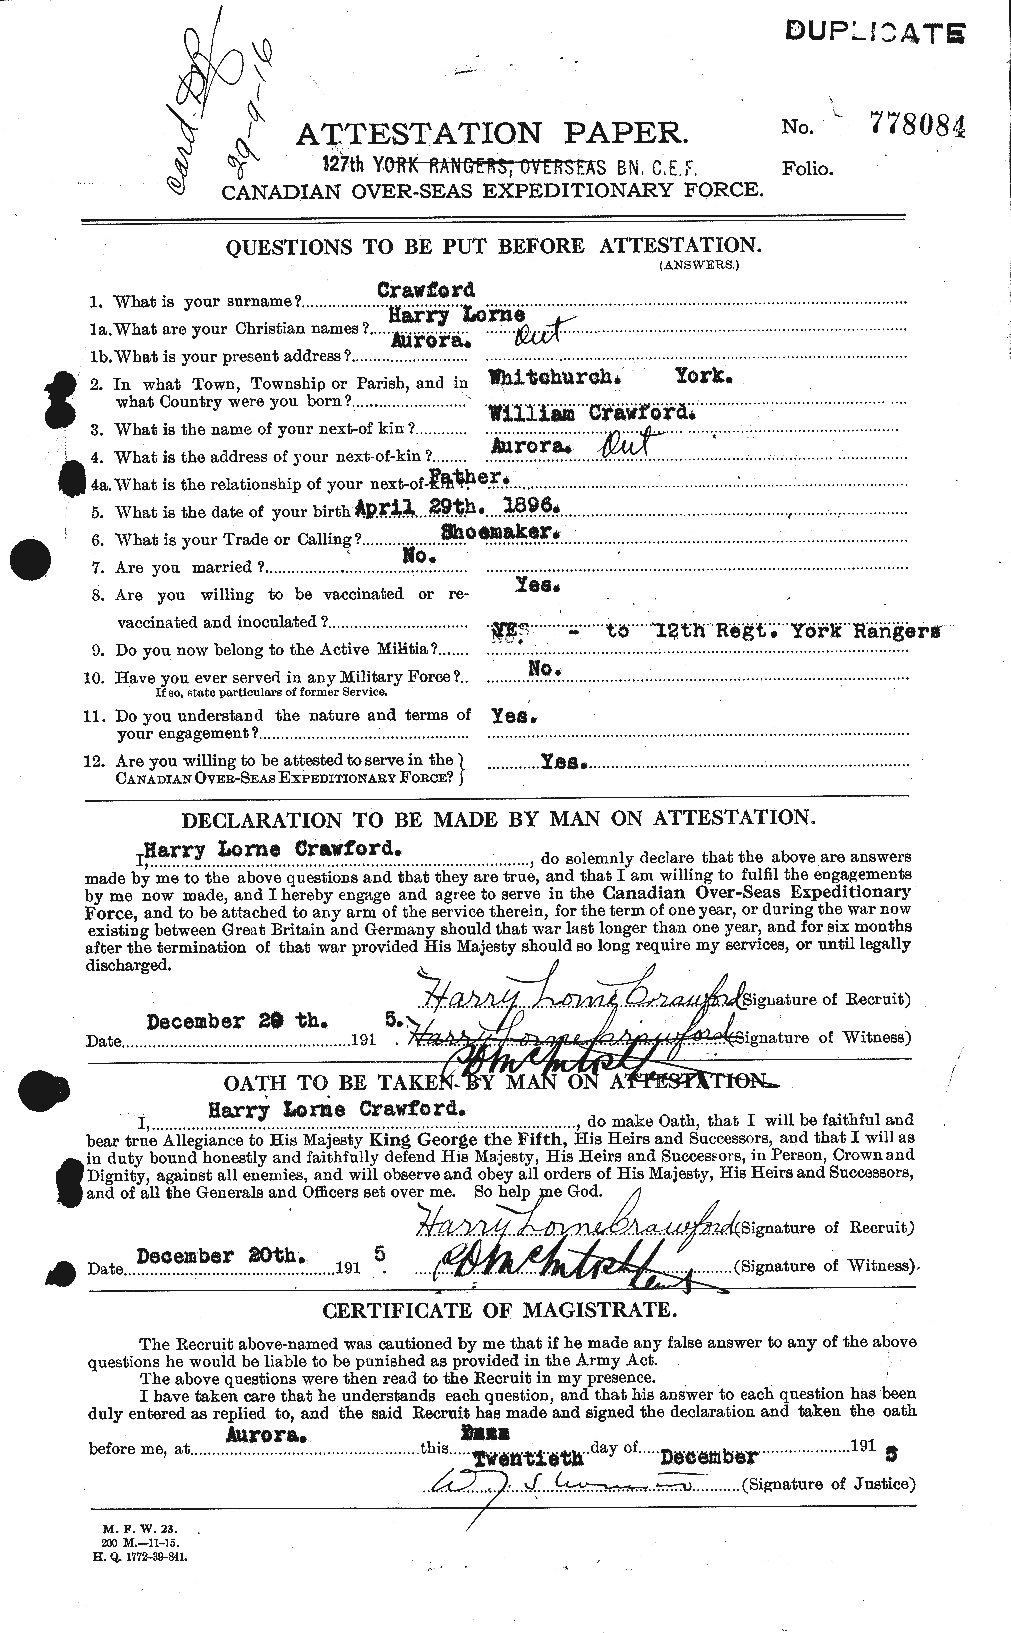 Dossiers du Personnel de la Première Guerre mondiale - CEC 060577a